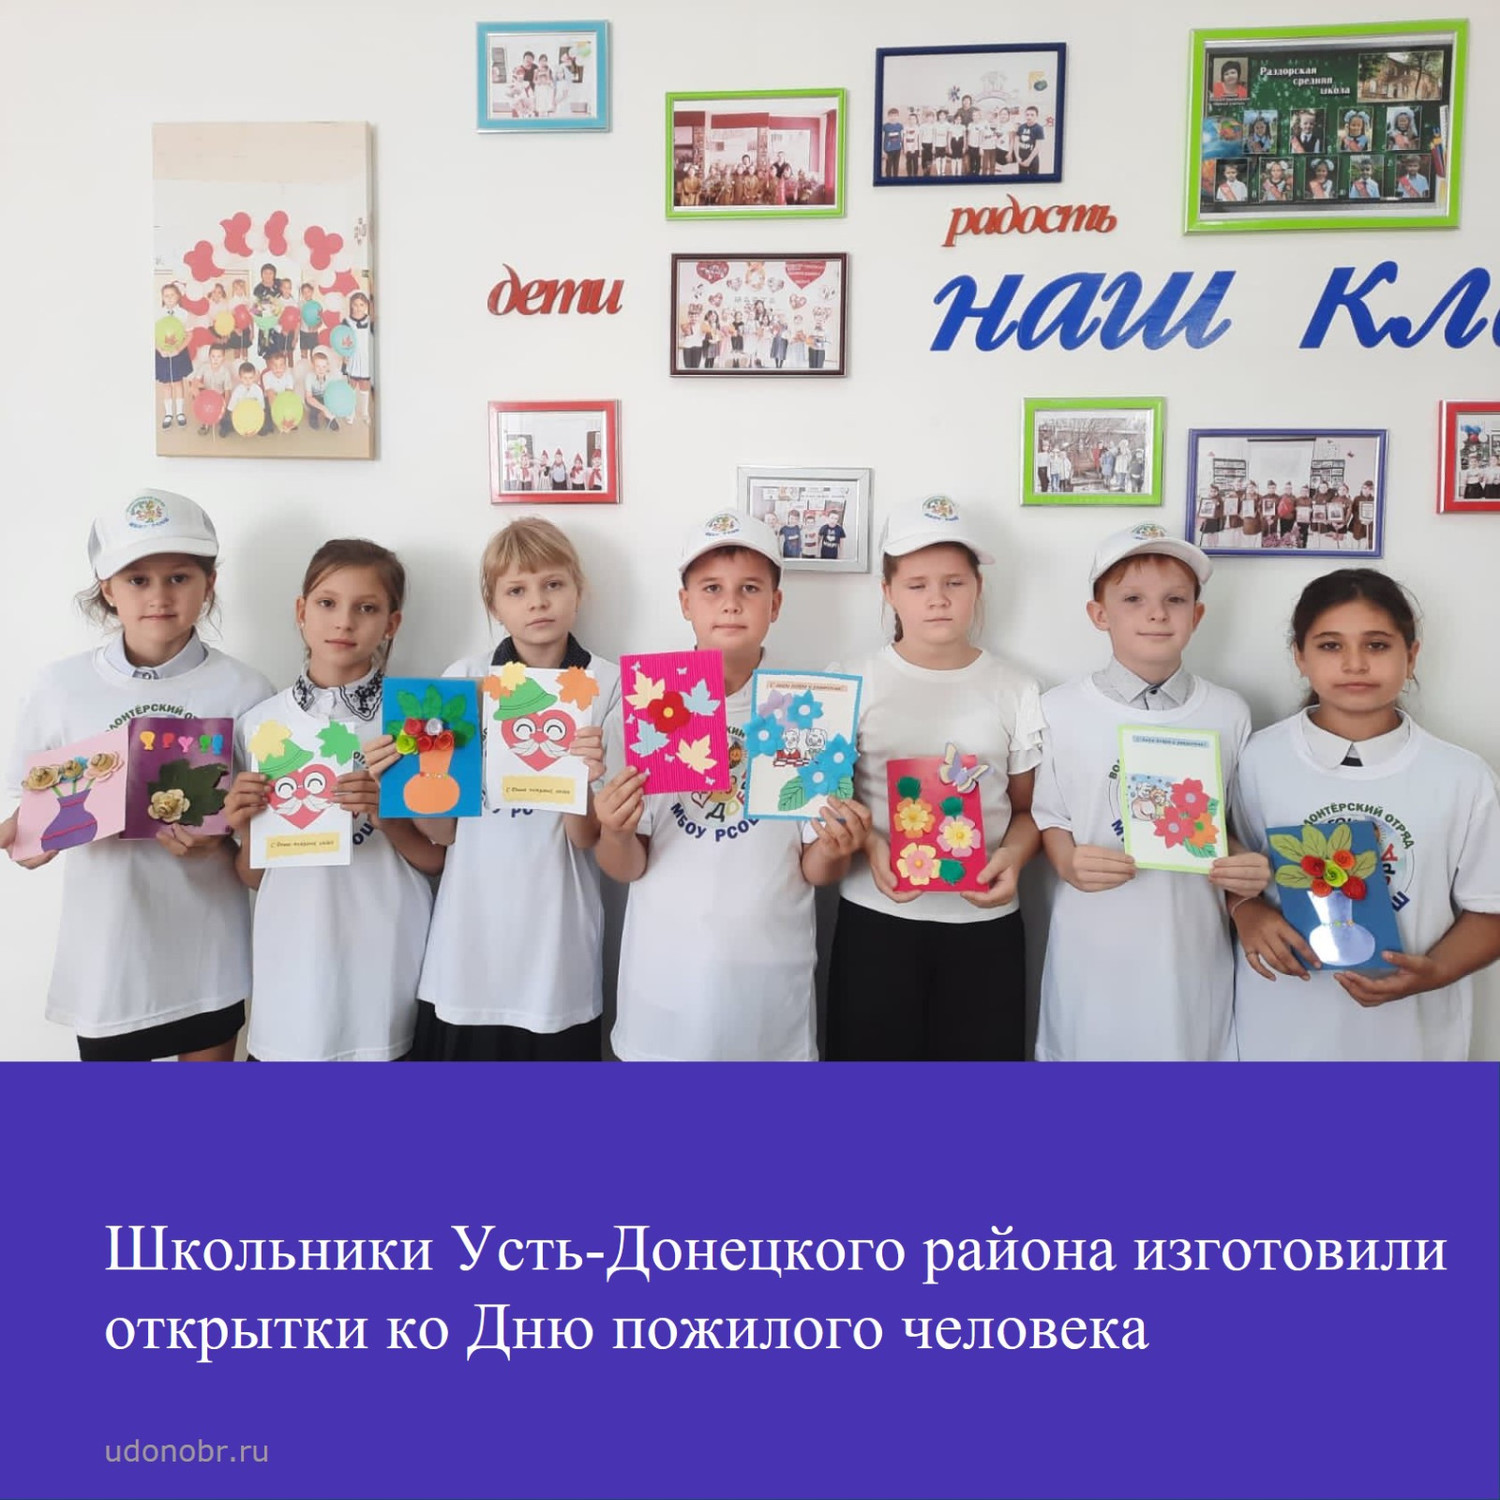 Школьники Усть-Донецкого района изготовили открытки ко Дню пожилого человека